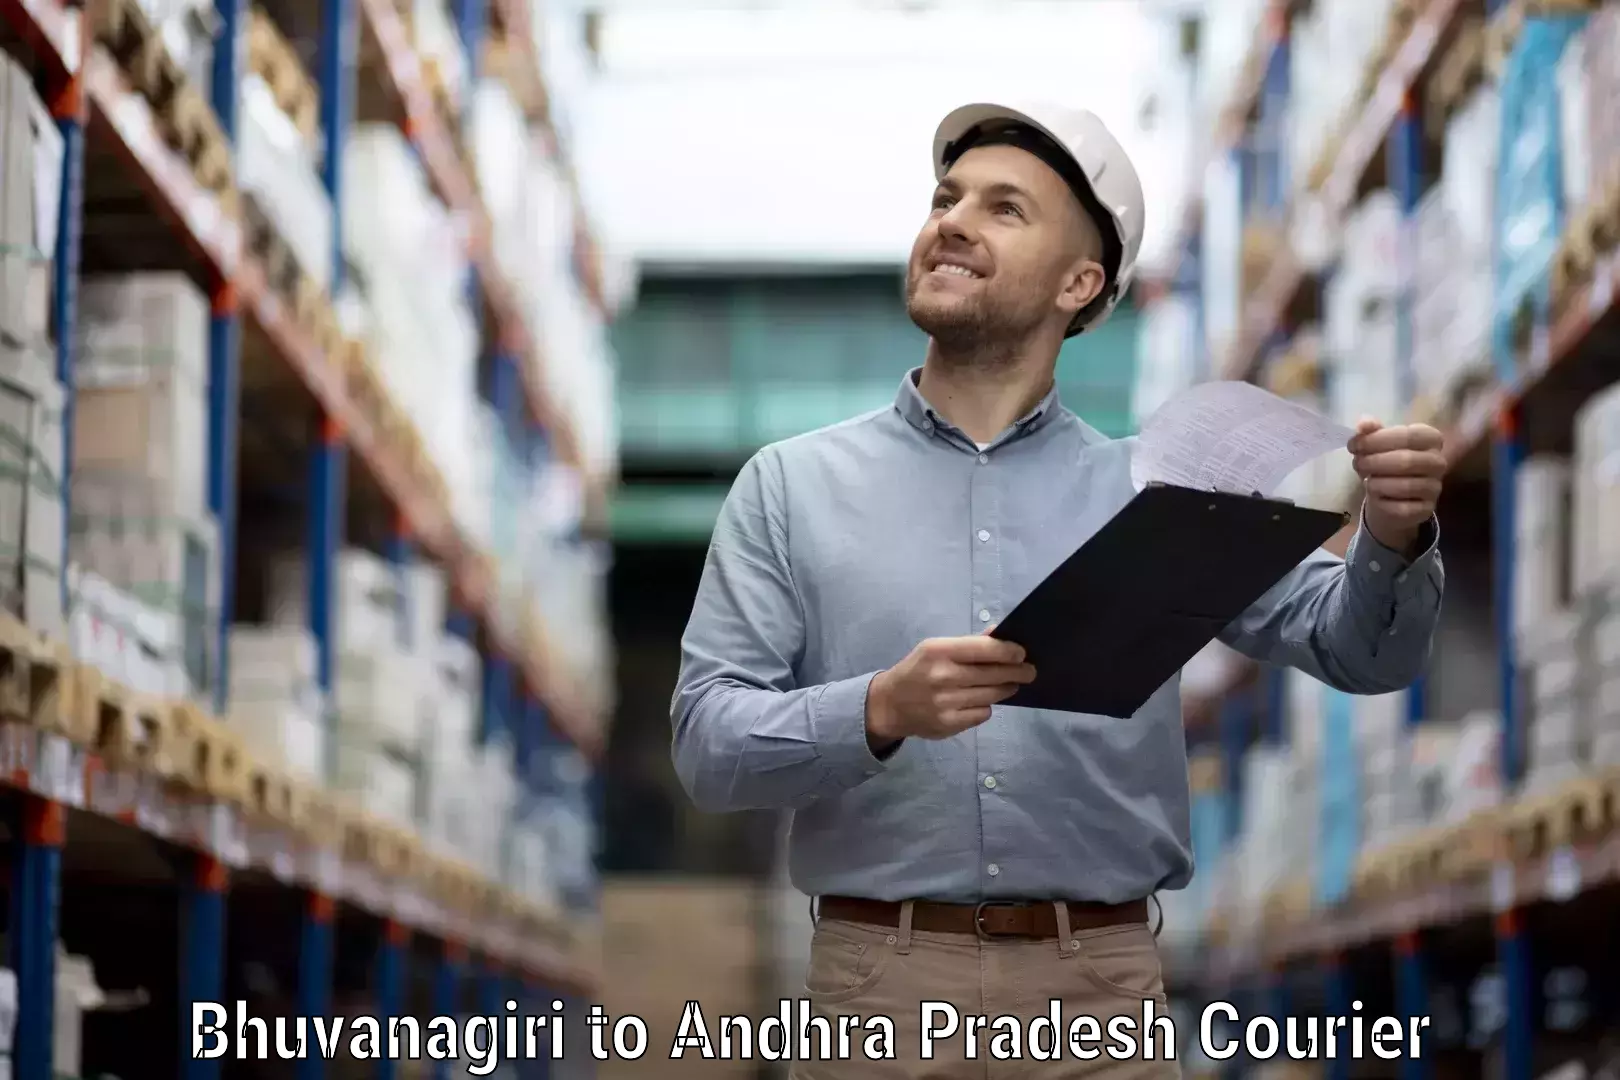 Customer-focused courier Bhuvanagiri to Vuyyuru